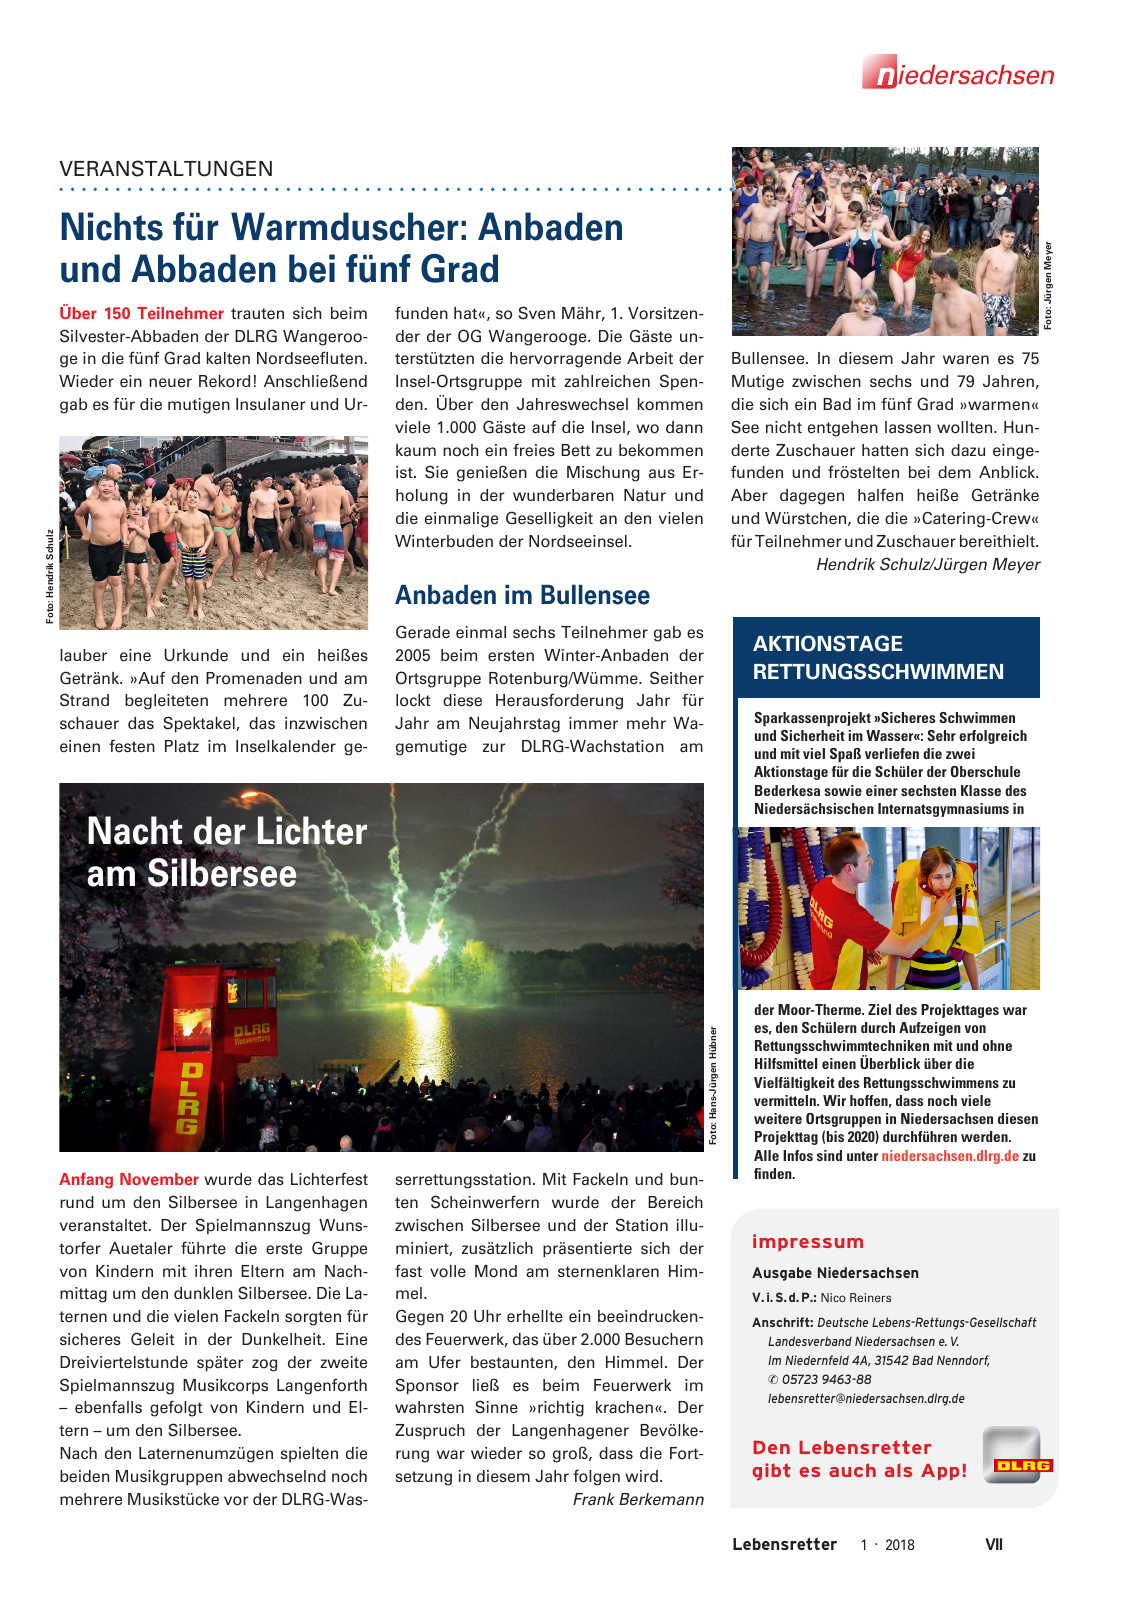 Vorschau Lebensretter 1/2018 - Regionalausgabe Niedersachsen Seite 9